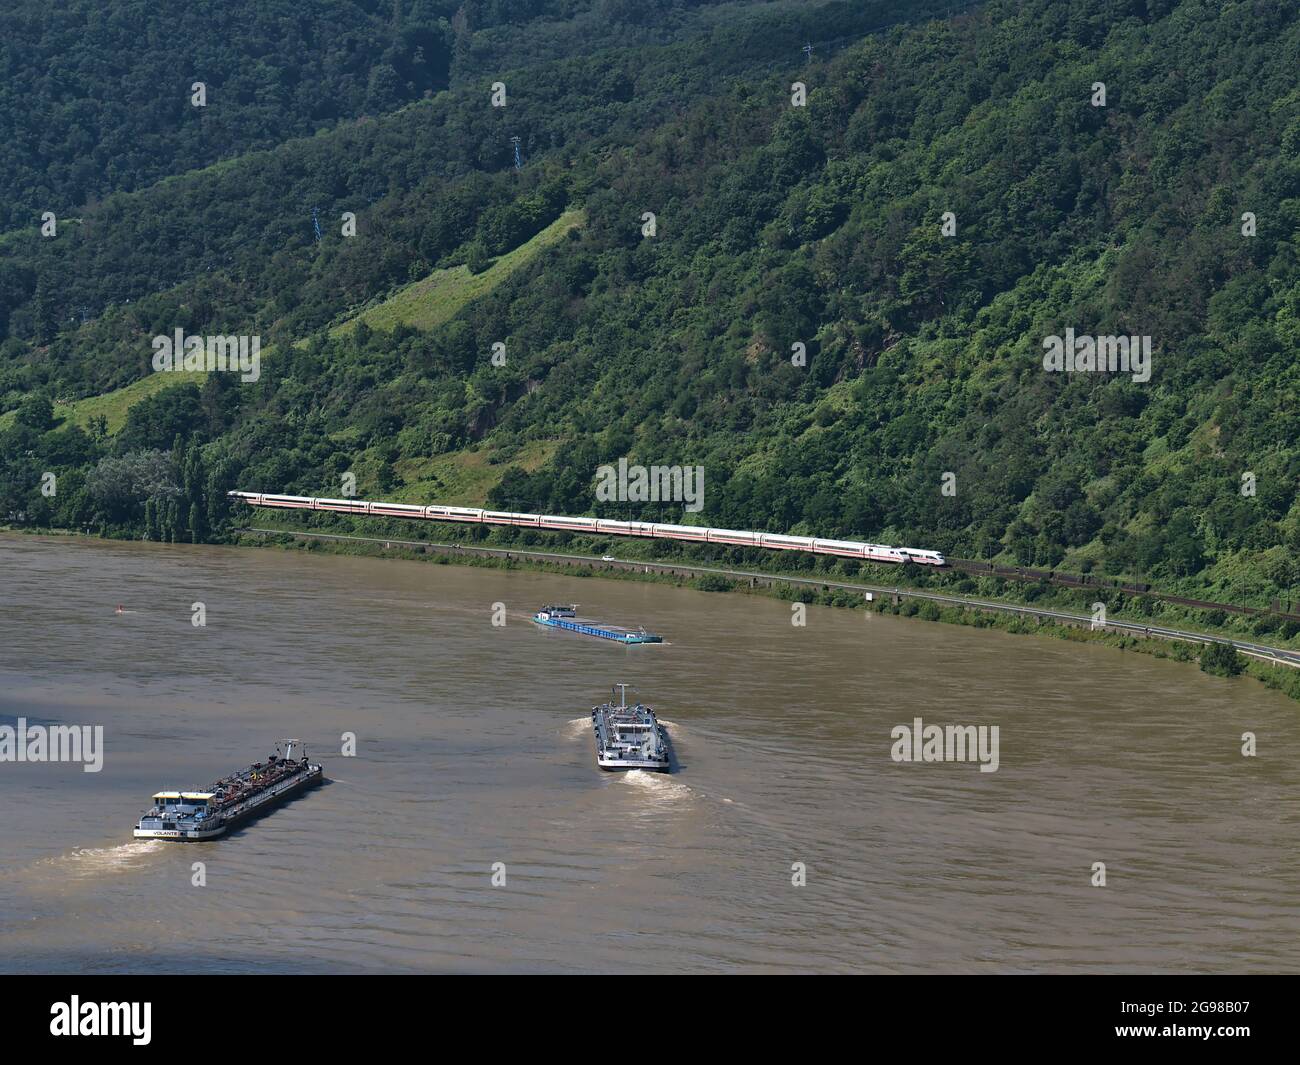 Luftaufnahme des Rheins, einer wichtigen Binnenschifffahrt, mit drei Frachtschiffen und zwei ICE-Zügen, die an sonnigen Tagen vorbeifahren. Stockfoto